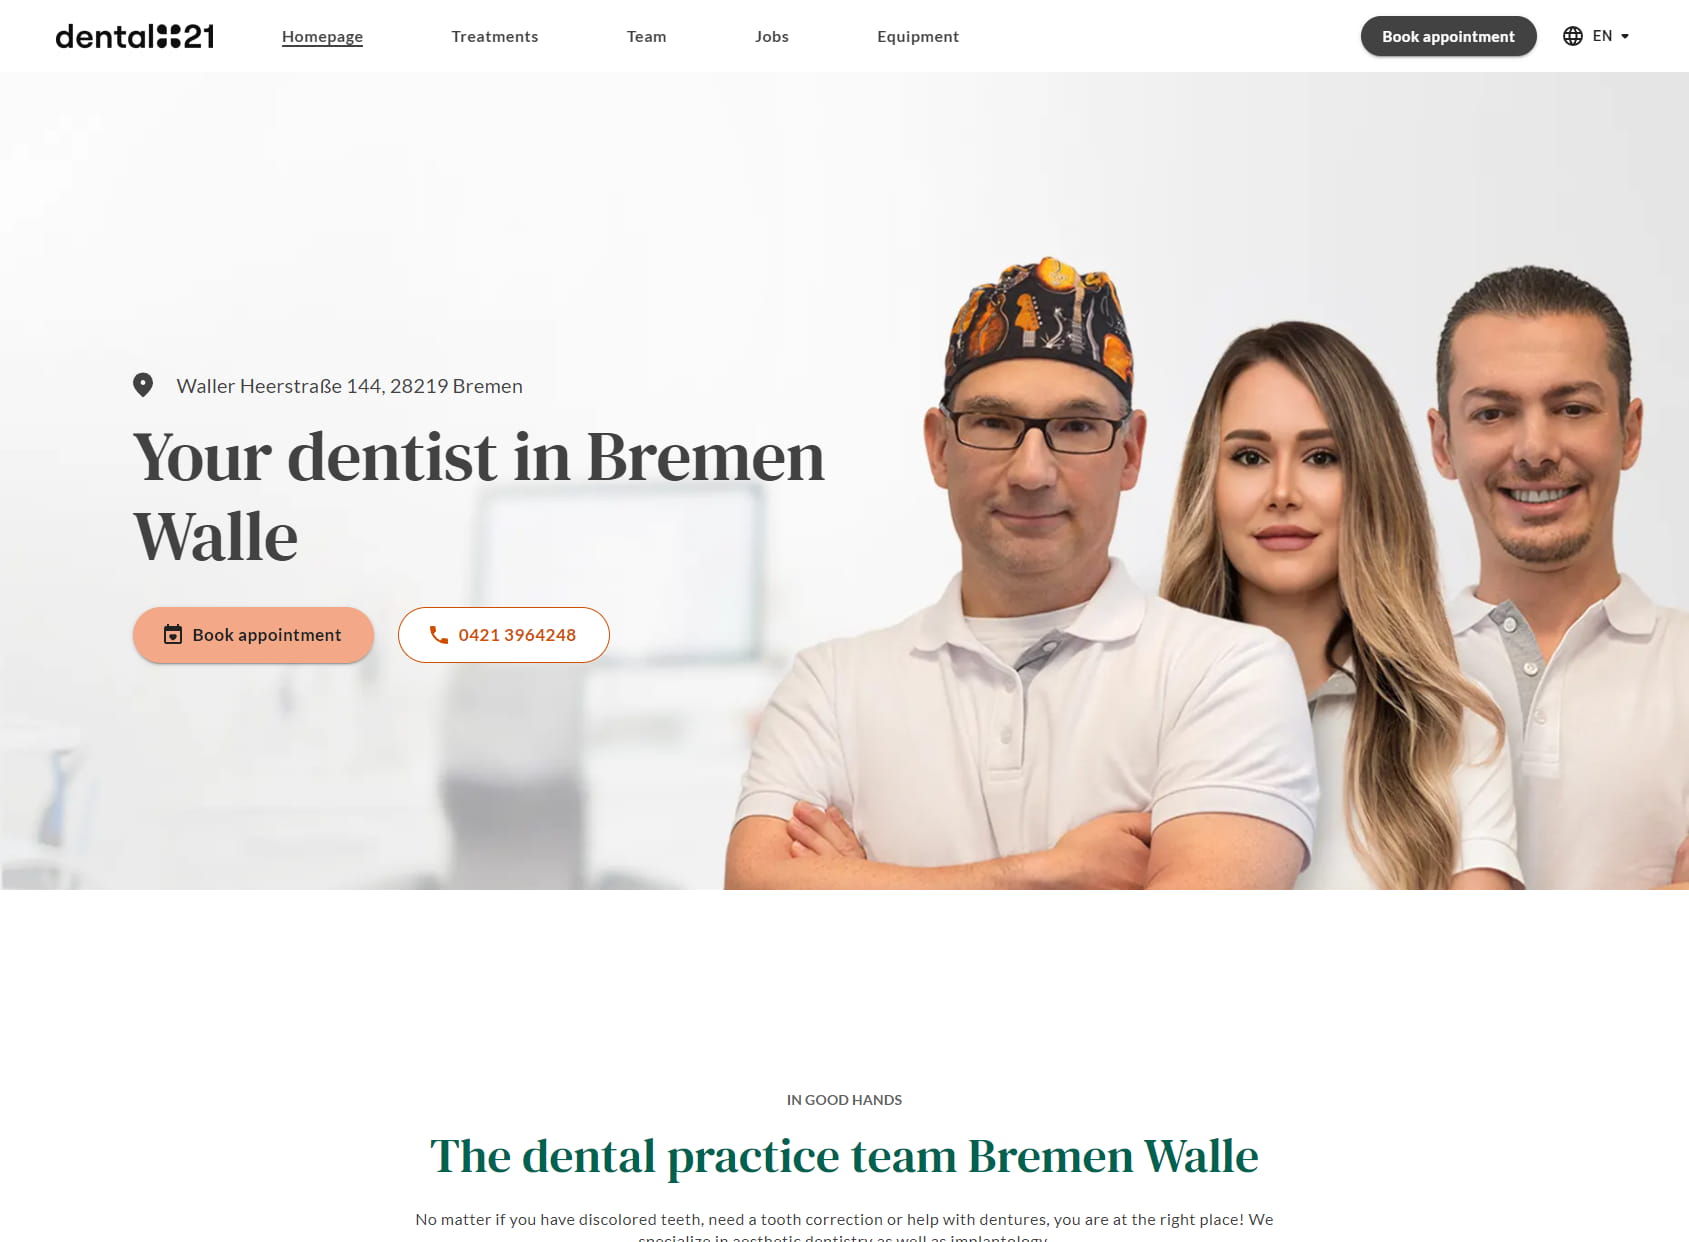 Dental21 Bremen Walle